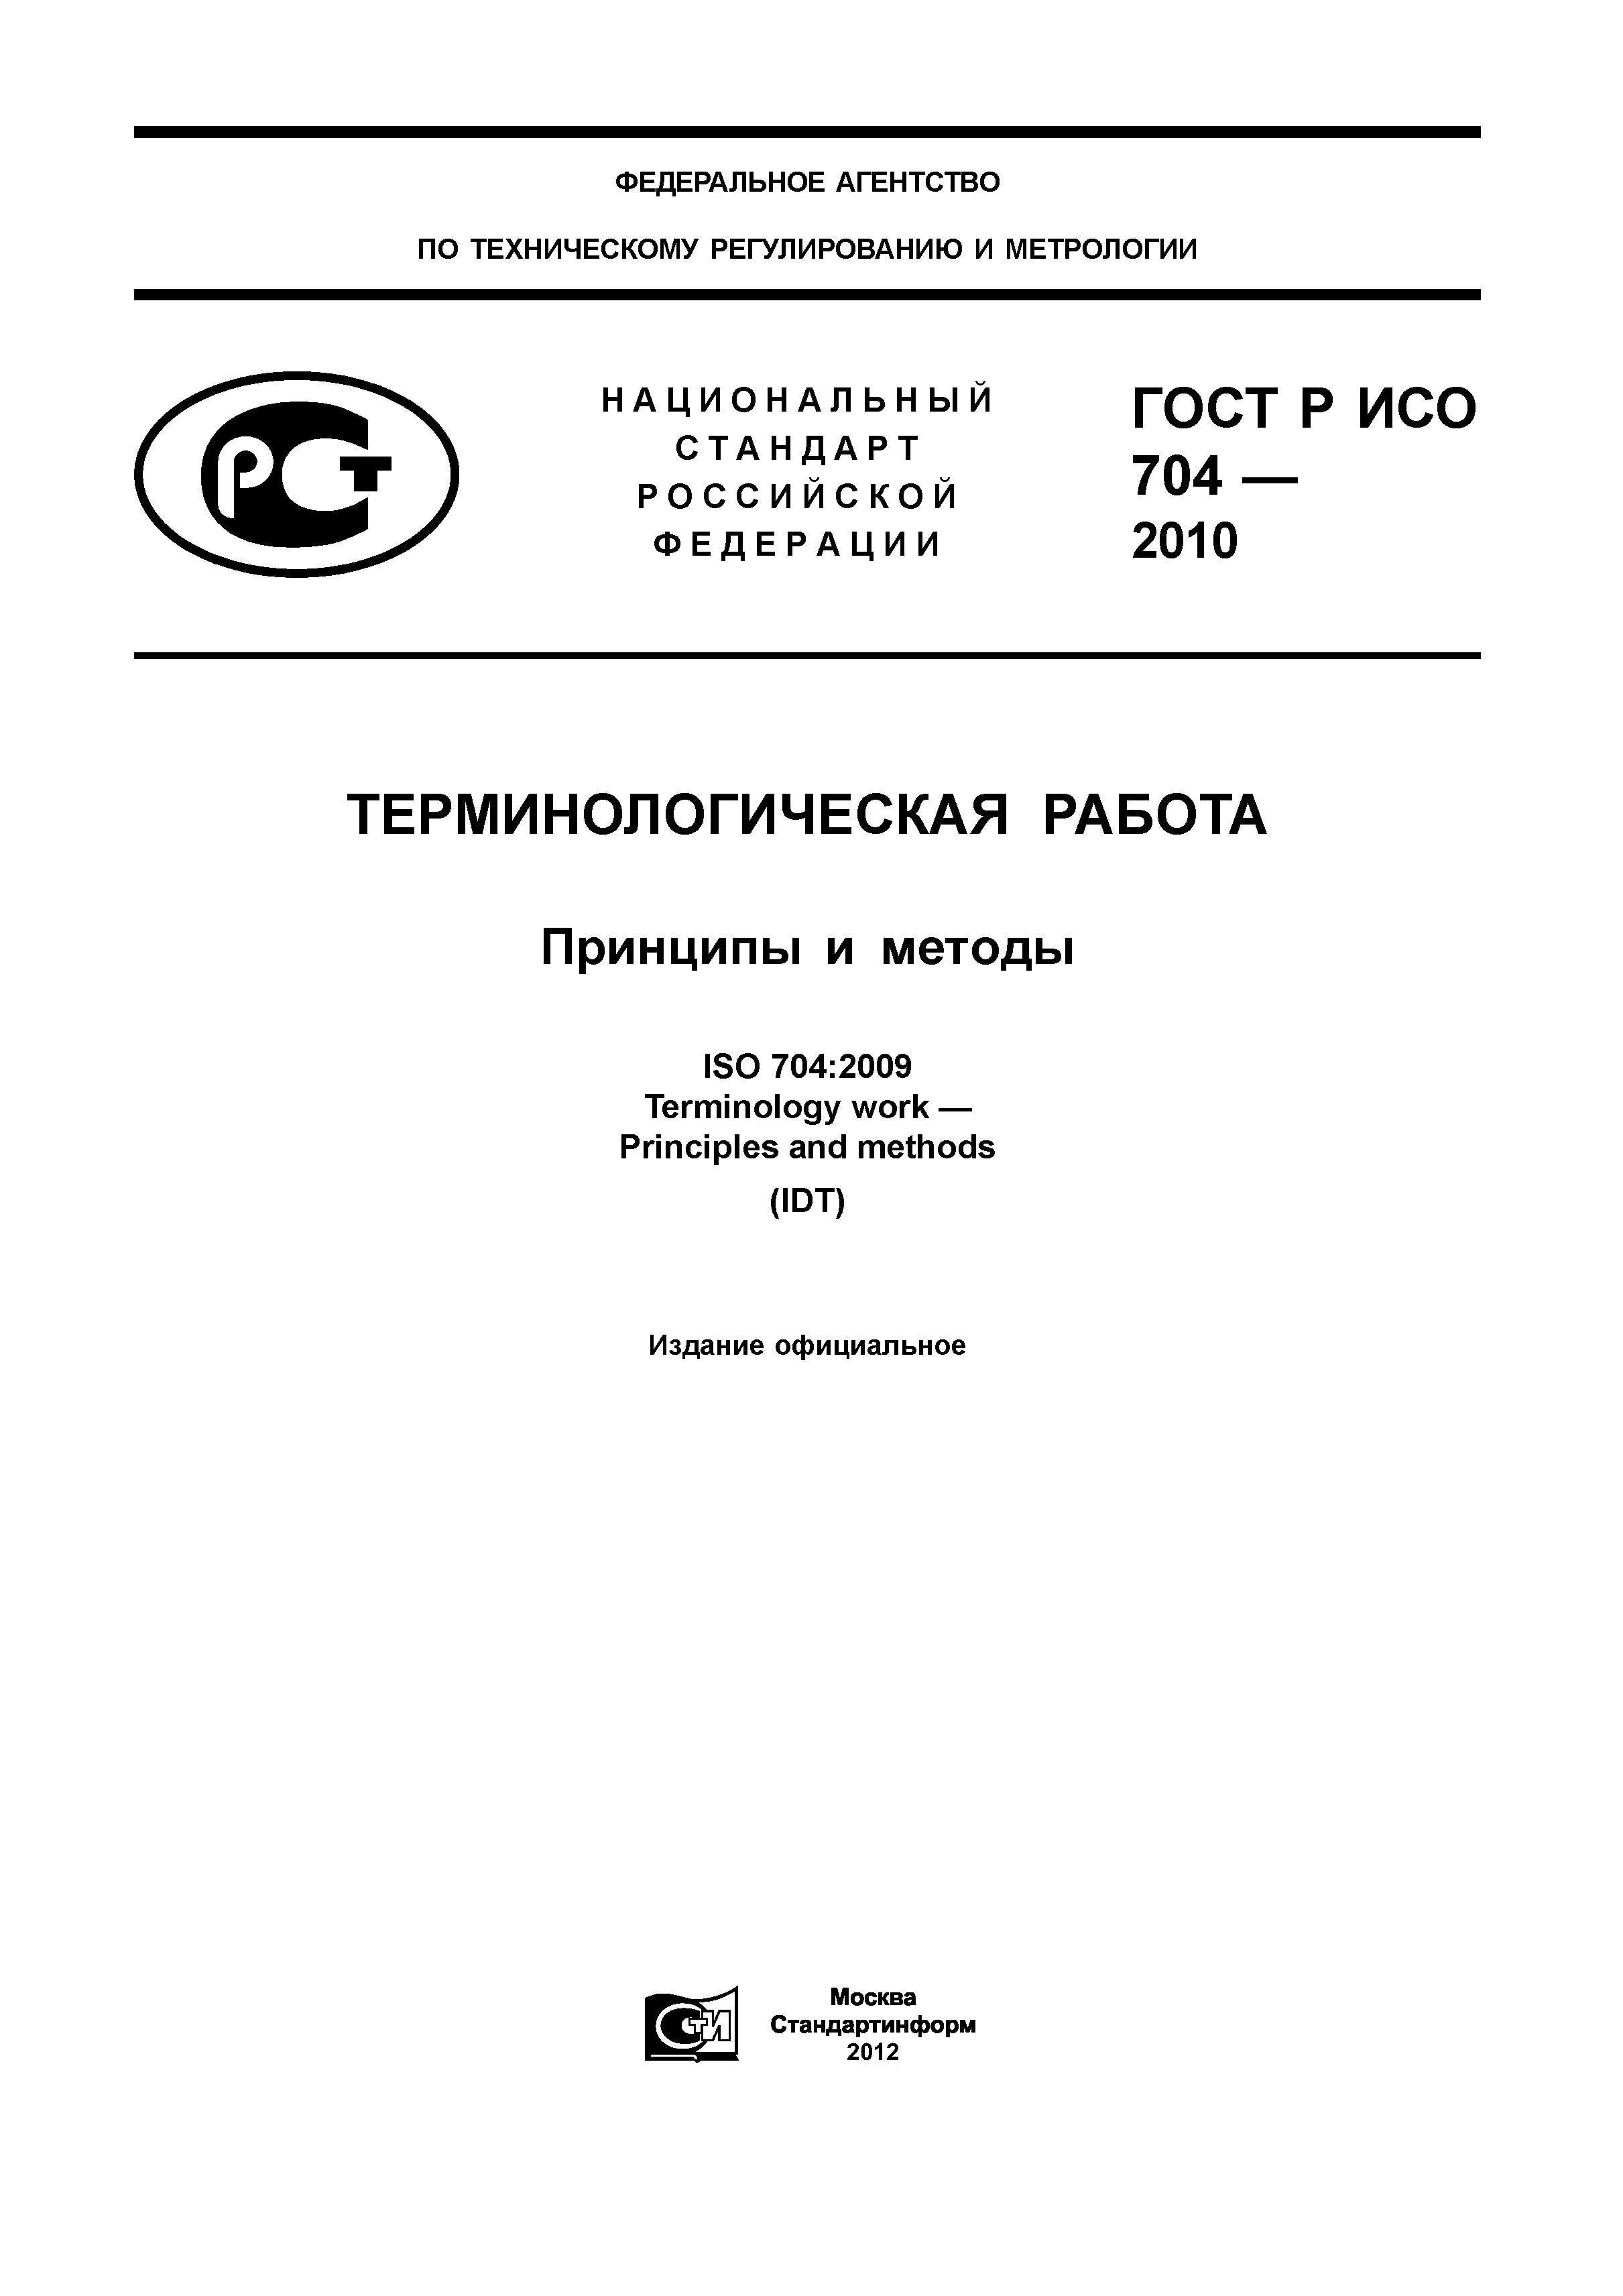 ГОСТ Р ИСО 704-2010